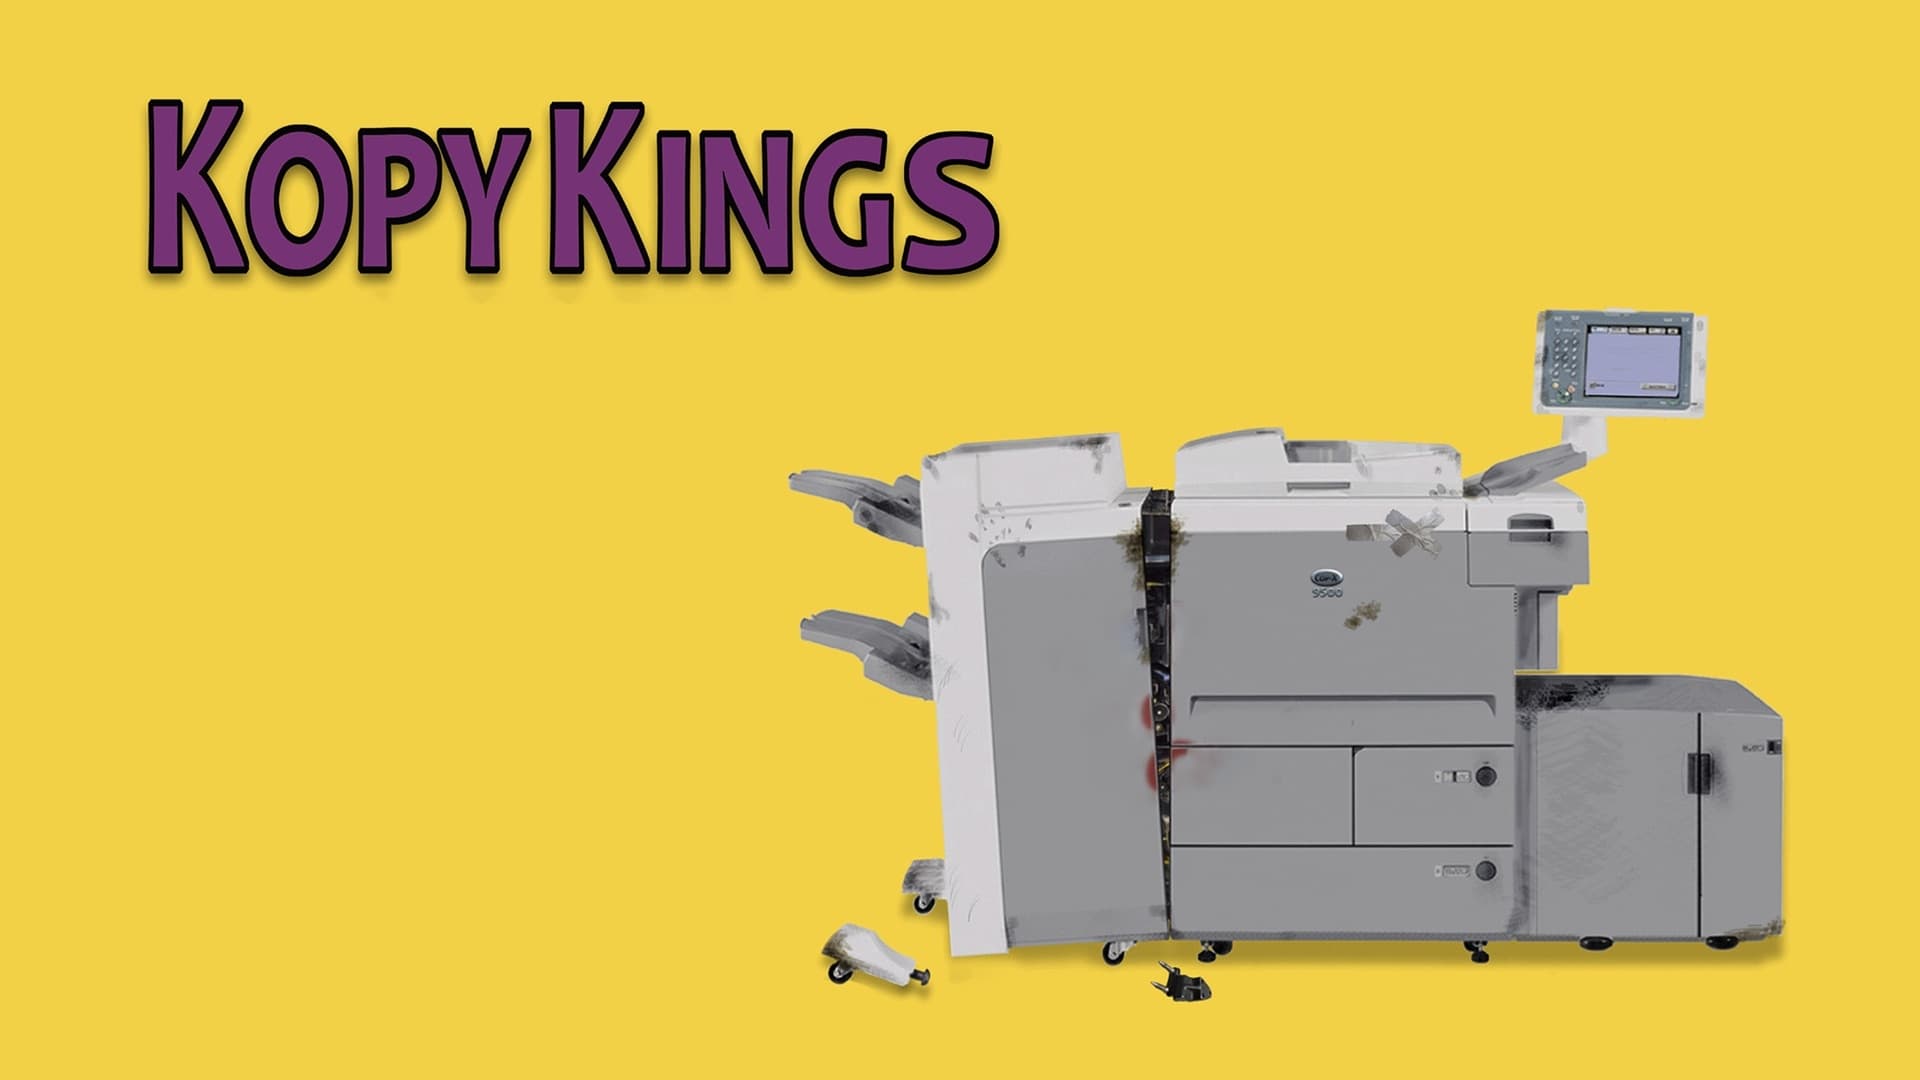 Kopy Kings (2016)